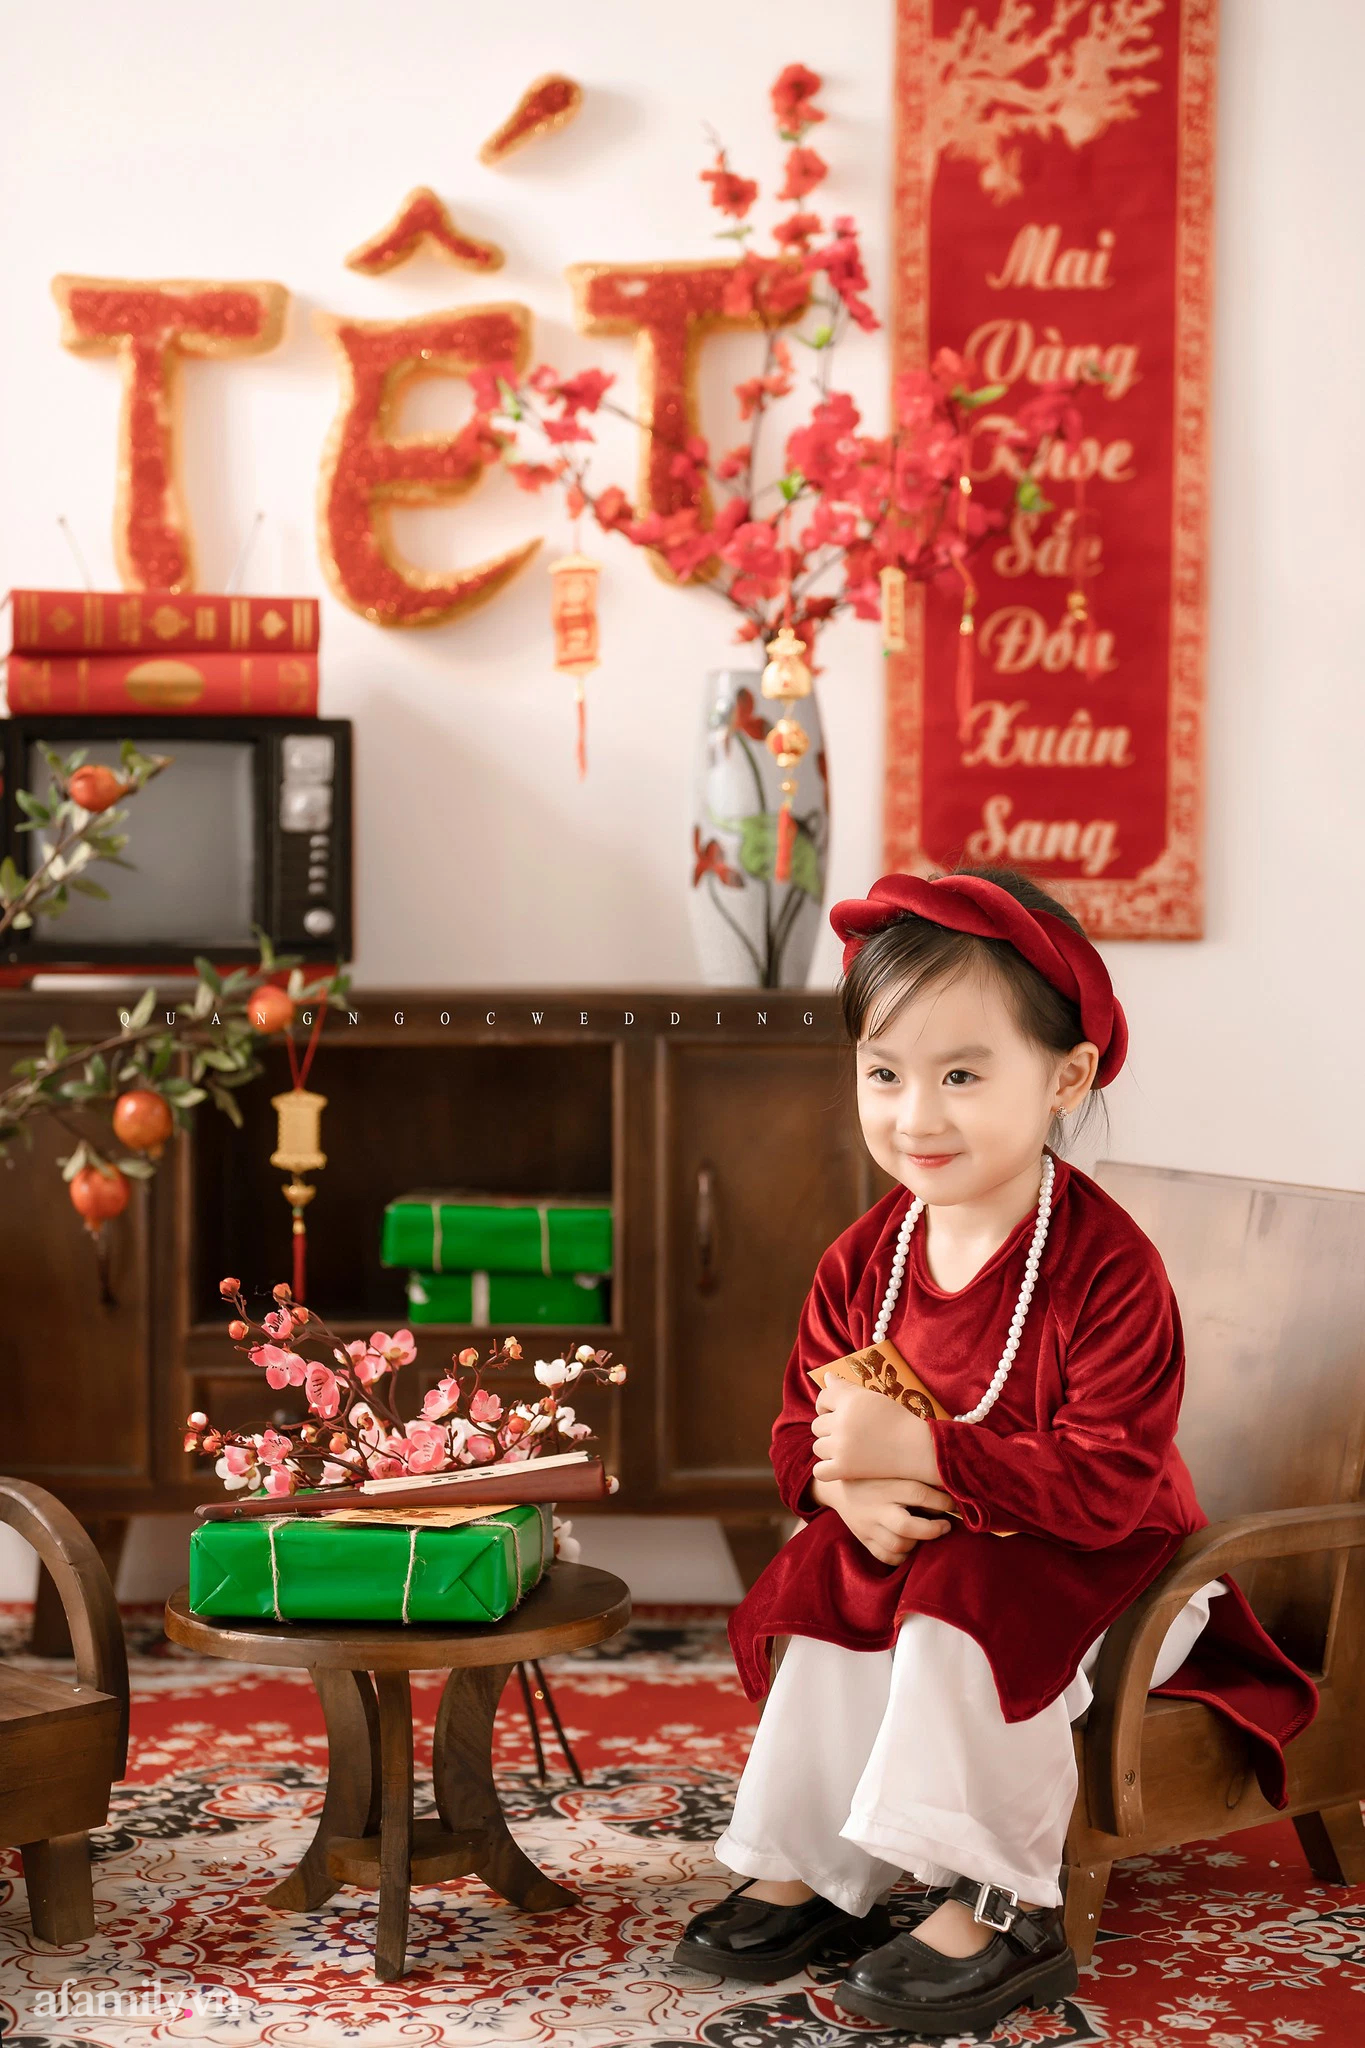 Áo dài đón Tết là trang phục truyền thống của người Việt Nam, tươi mới và đầy sắc màu. Xem những hình ảnh liên quan đến áo dài đón Tết để khám phá nhiều kiểu dáng áo dài đẹp và độc đáo, cùng với những thông điệp ý nghĩa về tình yêu gia đình và truyền thống.